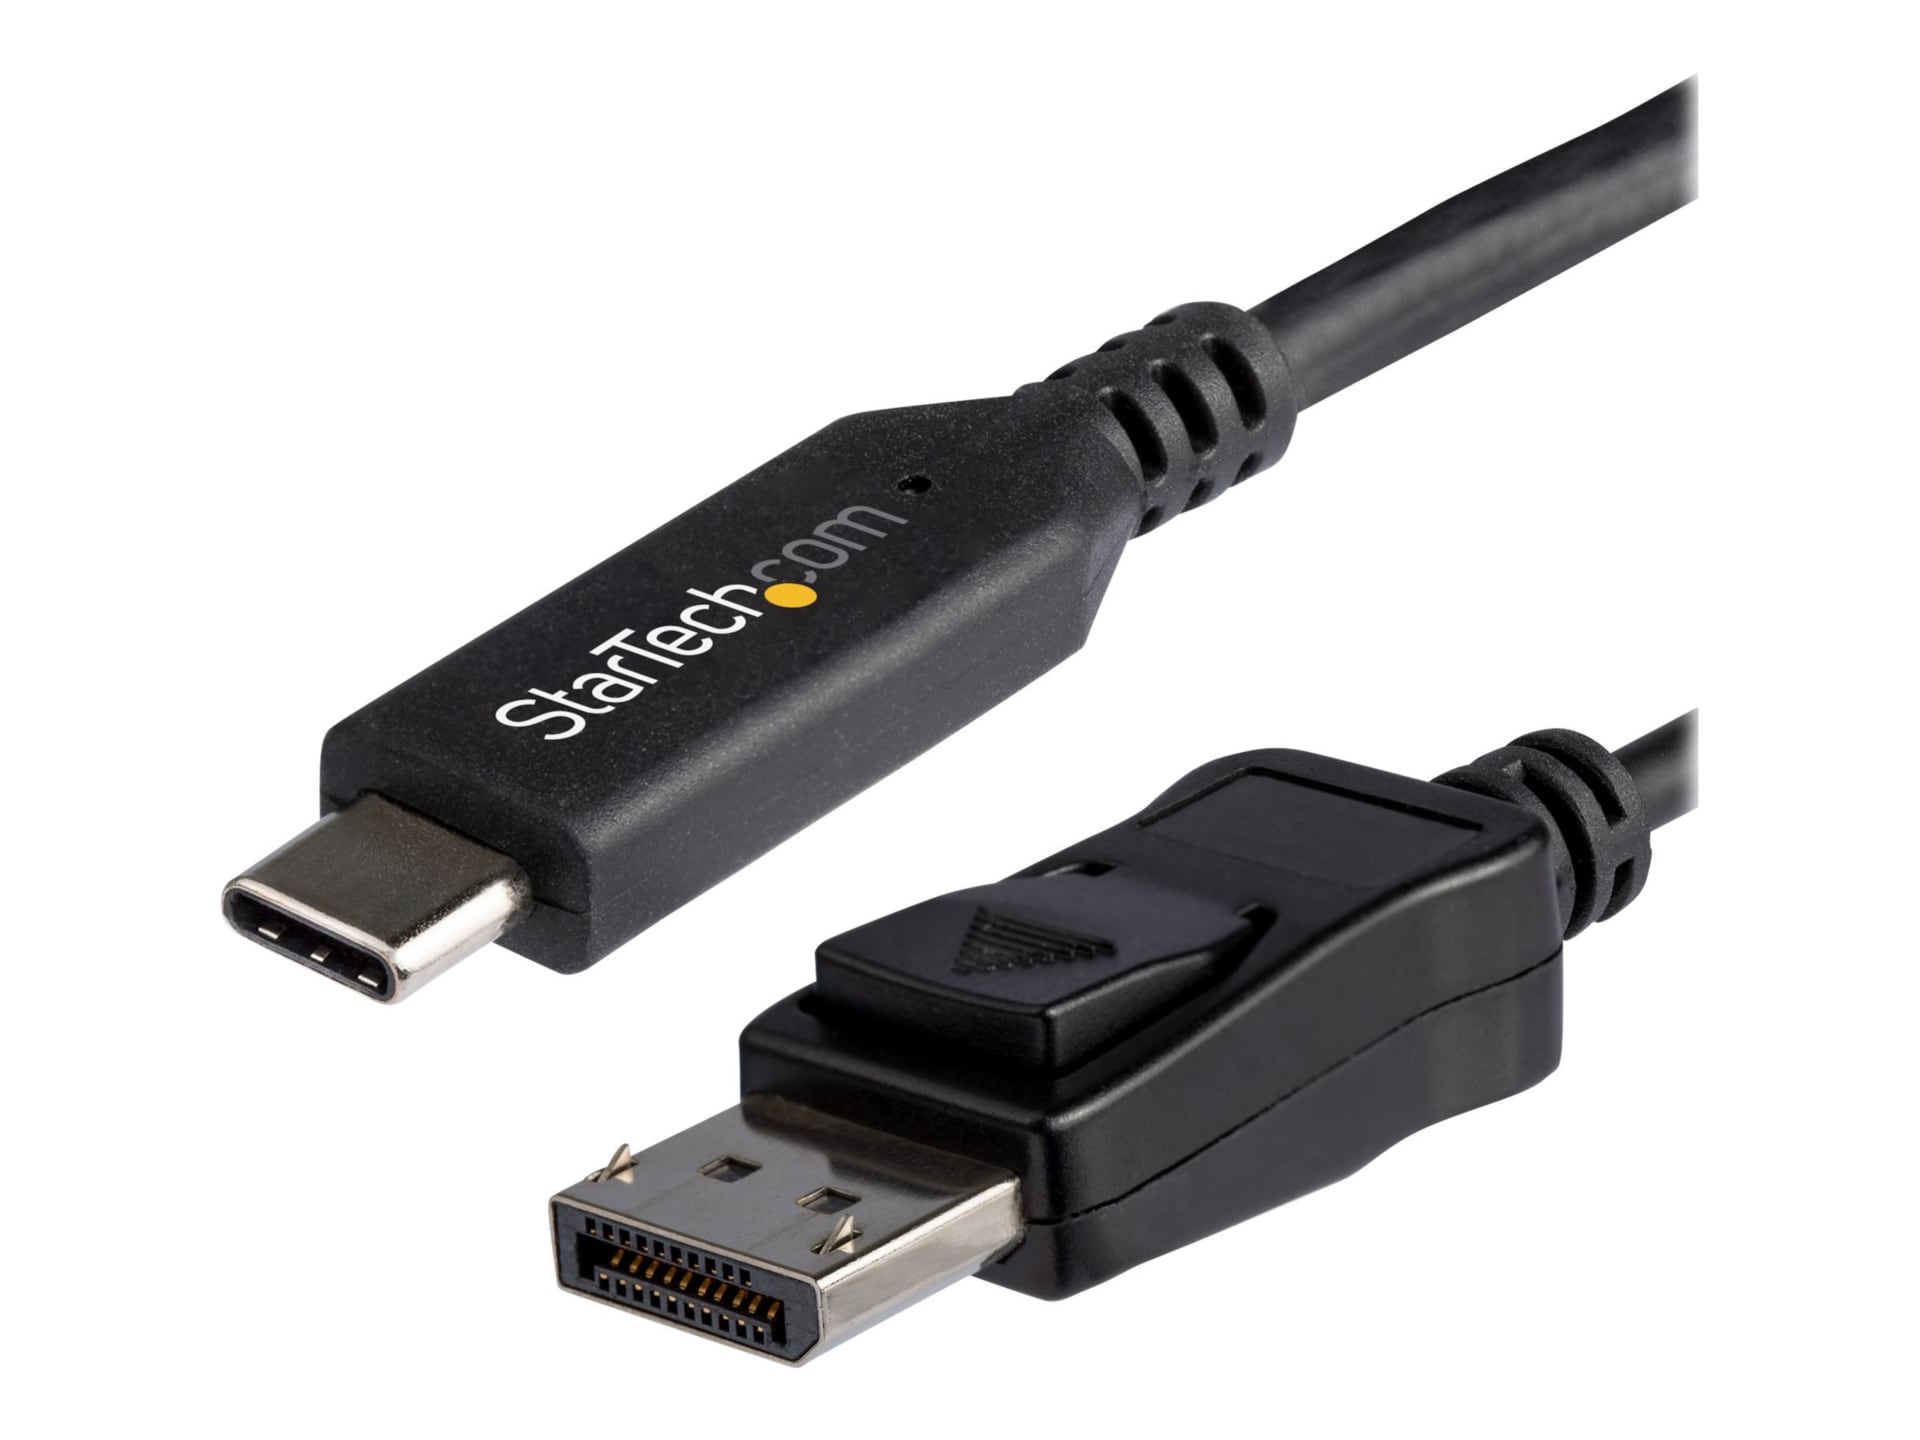 Câble USB-C vers DisplayPort 1.4 de 6 pi de StarTech.com avec adaptateur vidéo 8K 60 Hz HDR